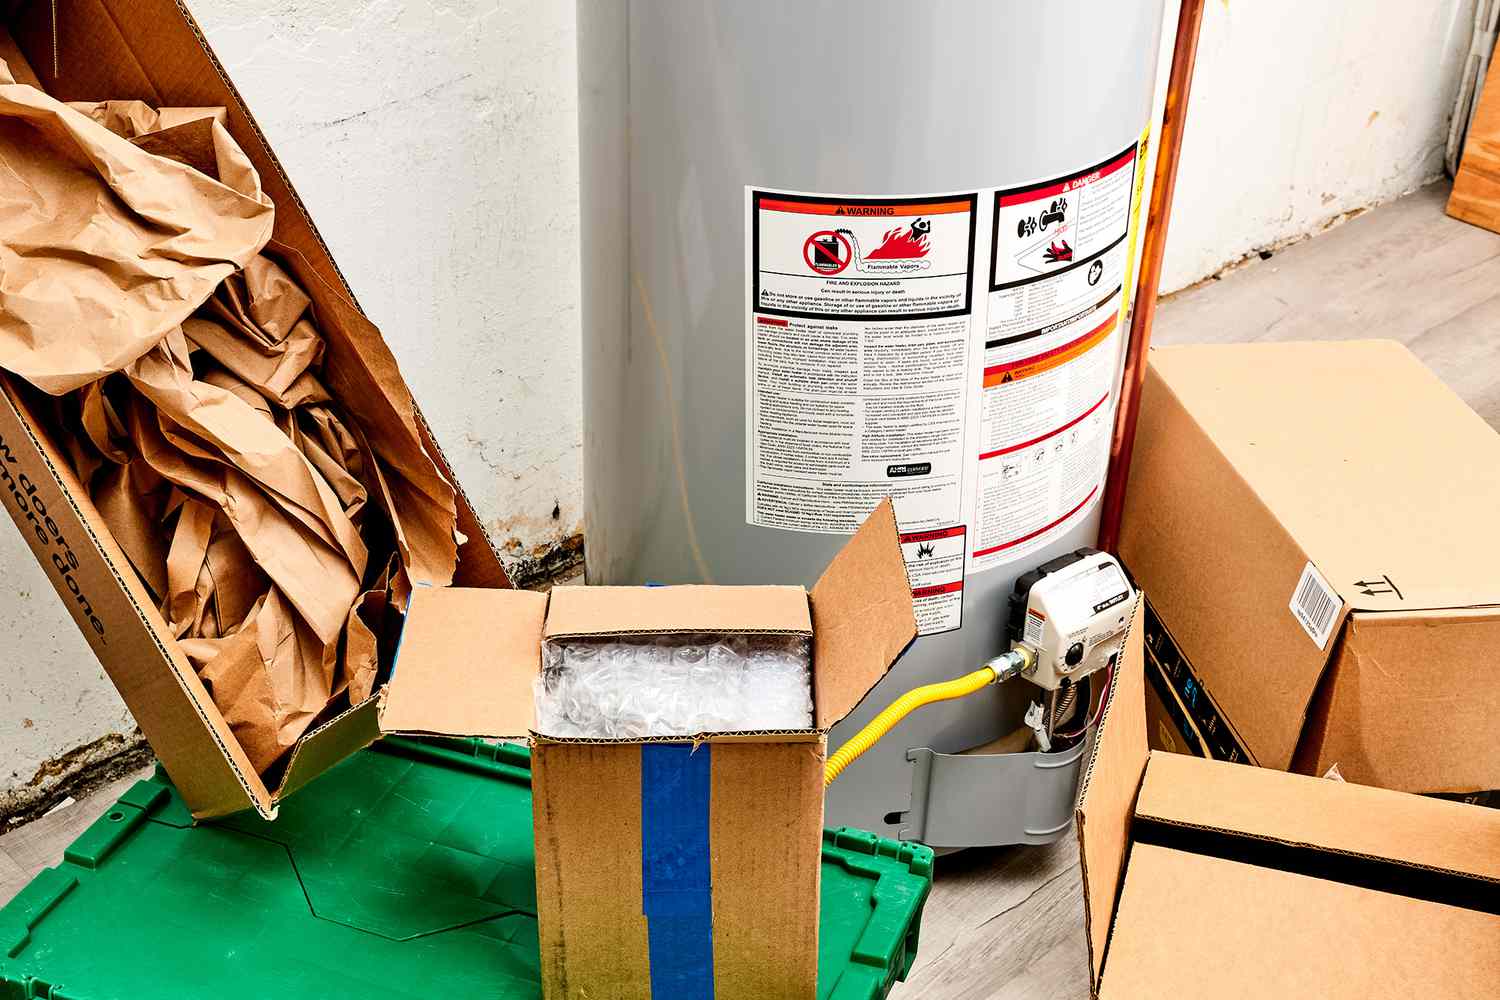 Kisten und Verpackungsmaterial blockieren den Zugang zur Gasleitung am Warmwasserbereiter